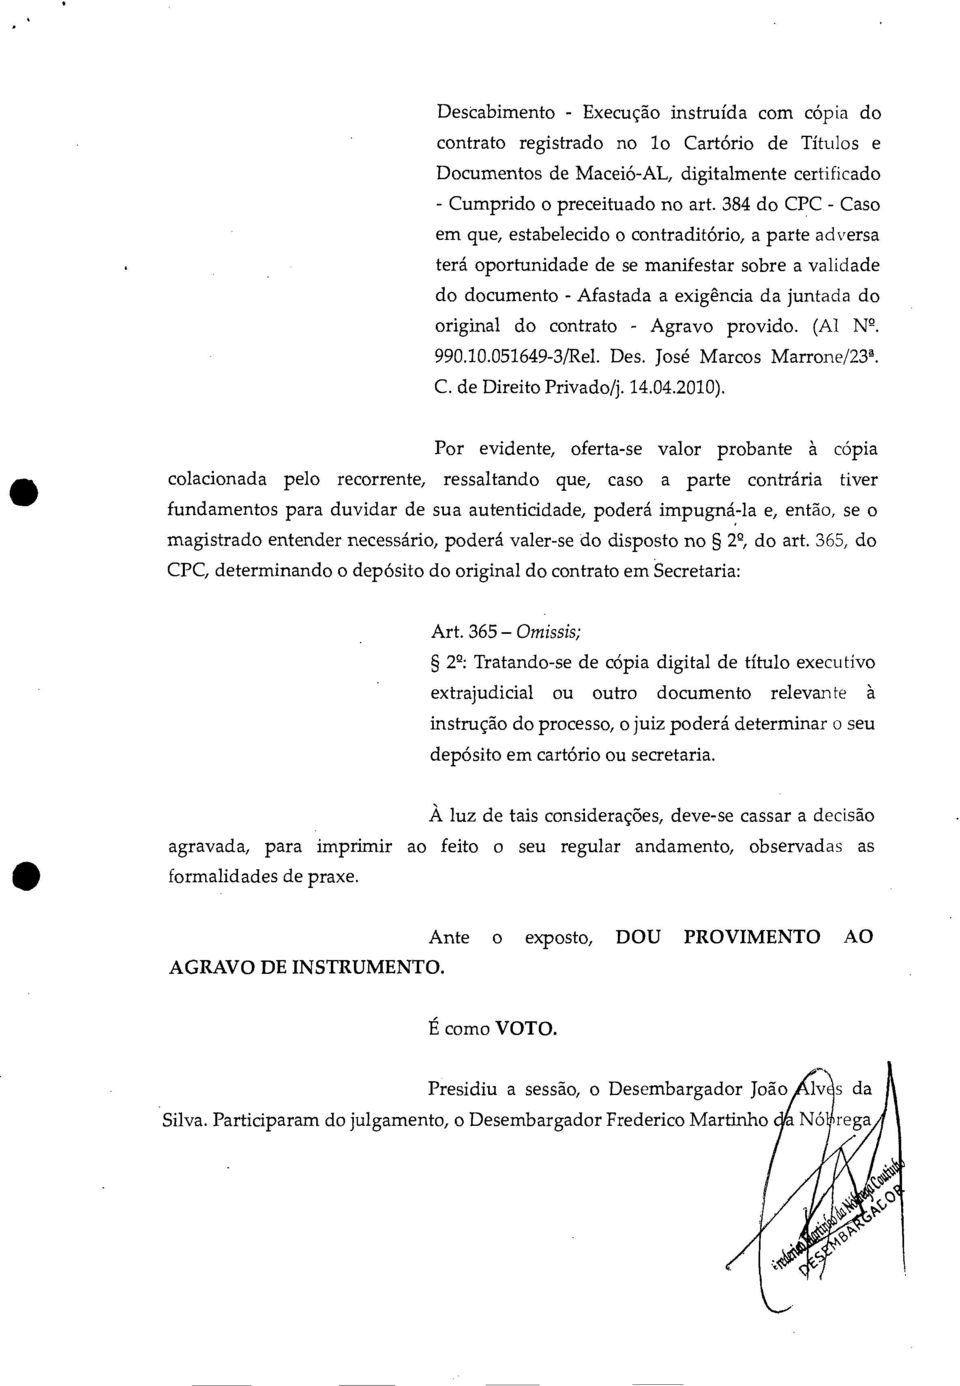 Agravo provido. (Al N. 990.10.051649-3/Rel. Des. José Marcos Marrone/23 4. C. de Direito Privado/j. 14.04.2010).